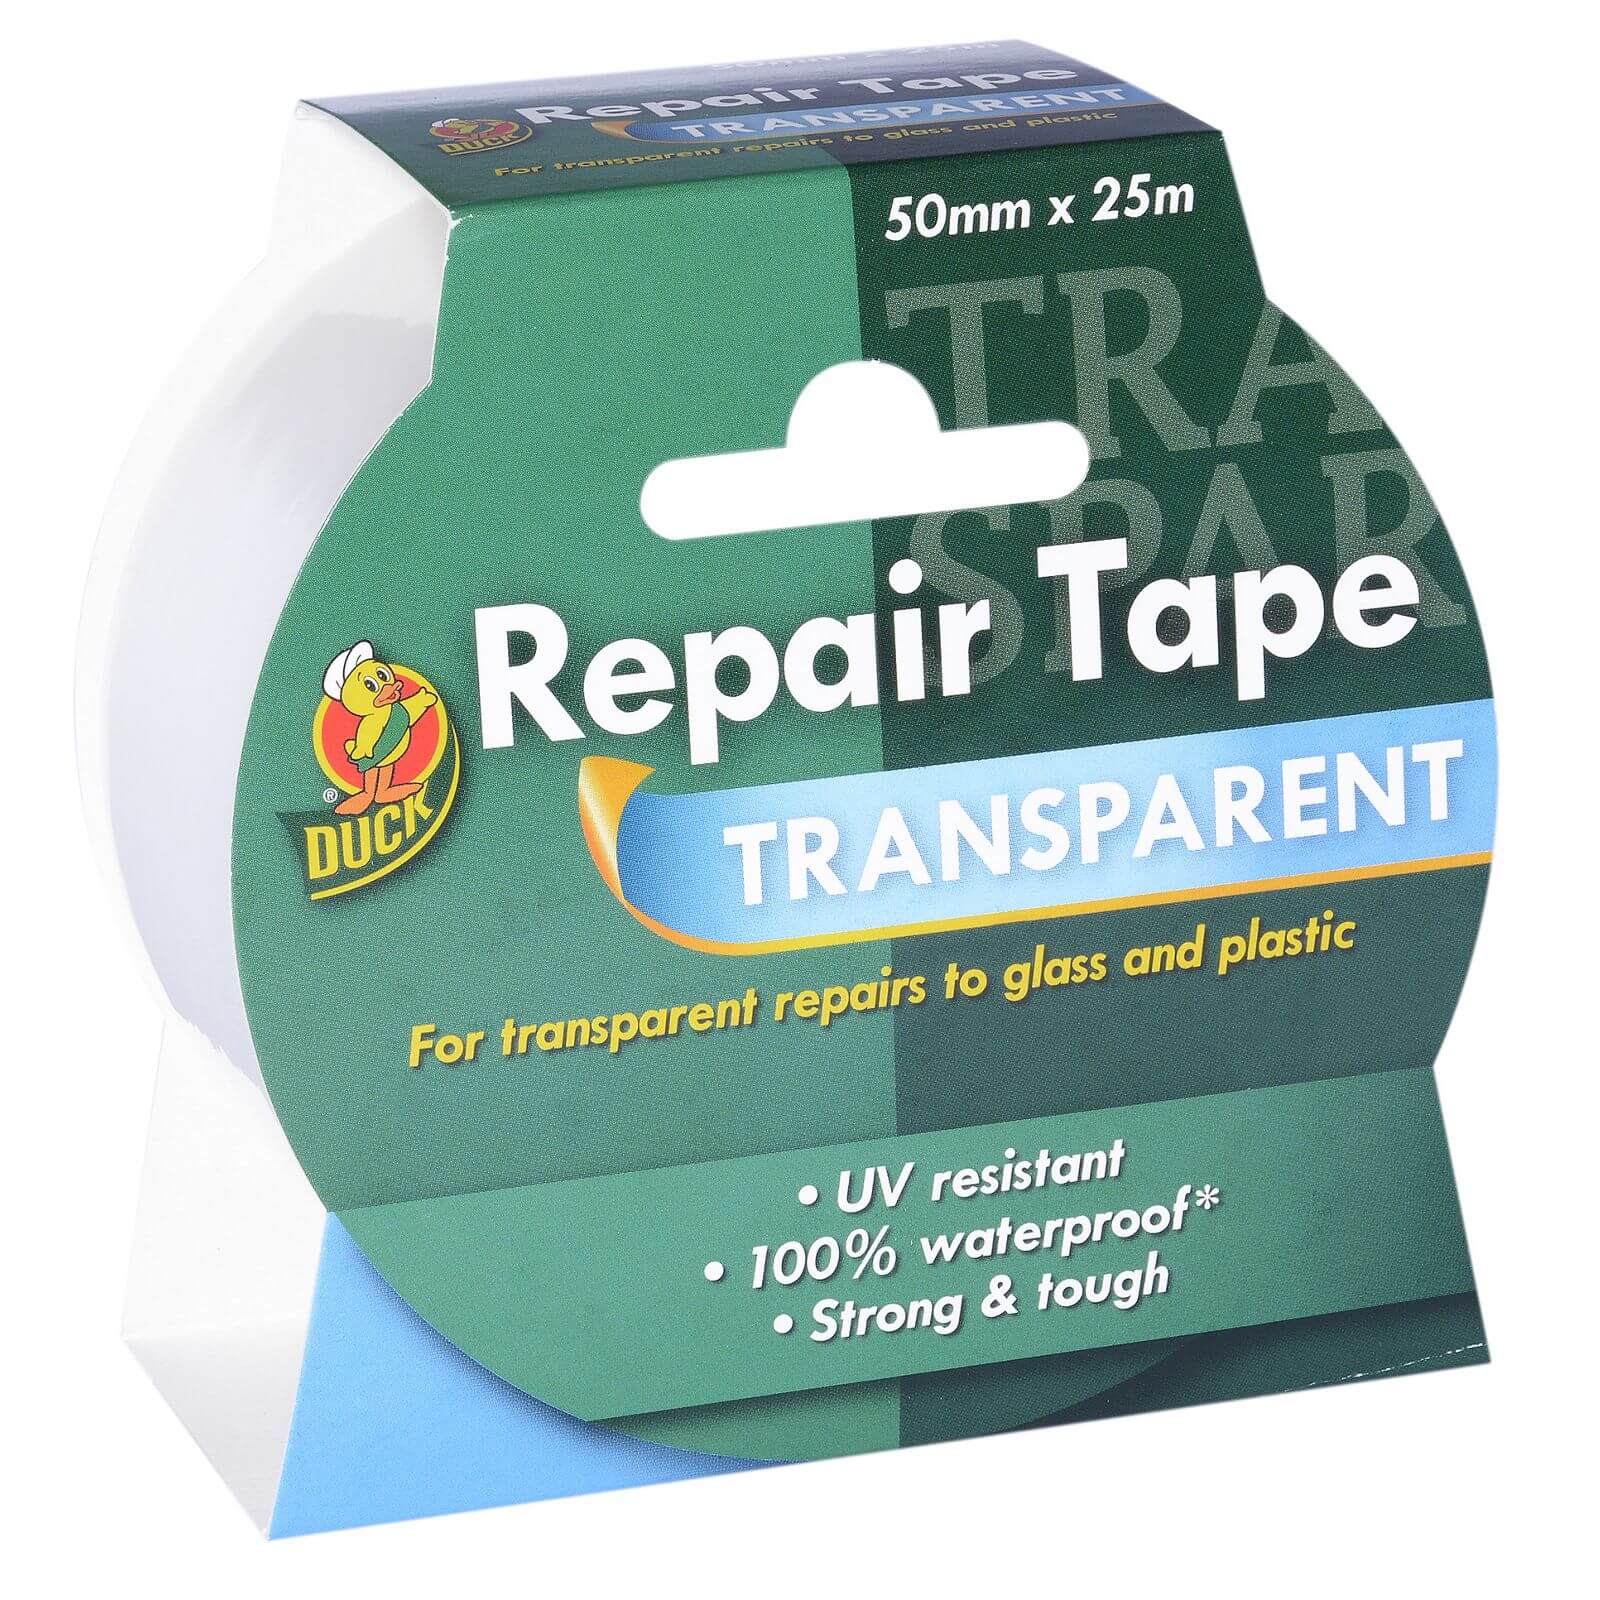 Duck Repair Tape - 50mm x 25m